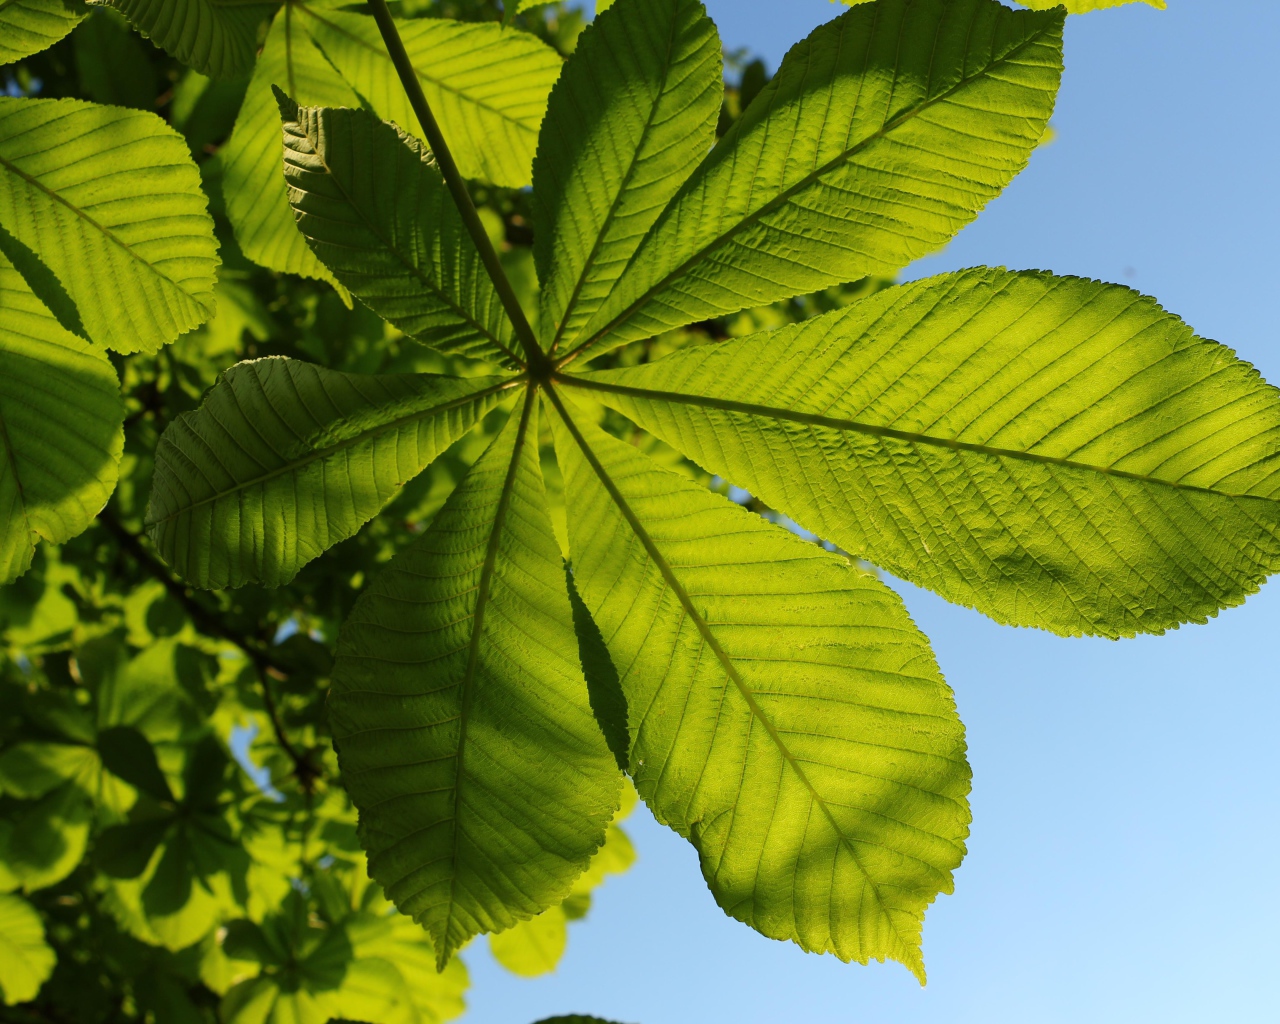 Зеленый лист каштана под голубым небом летом 